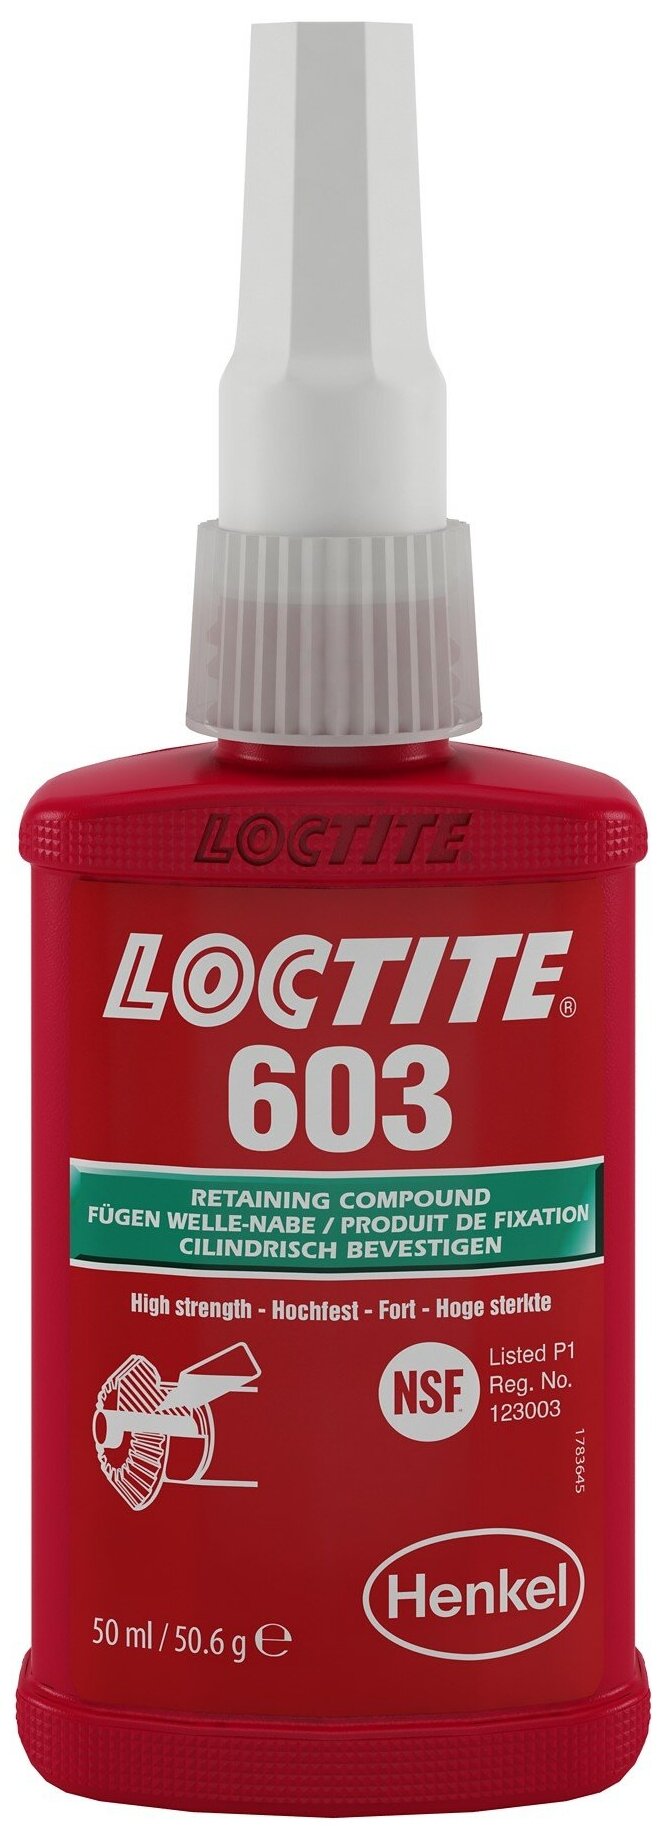 Loctite 603 50мл (вал-втулочный фиксатор быстроотверждаемый)